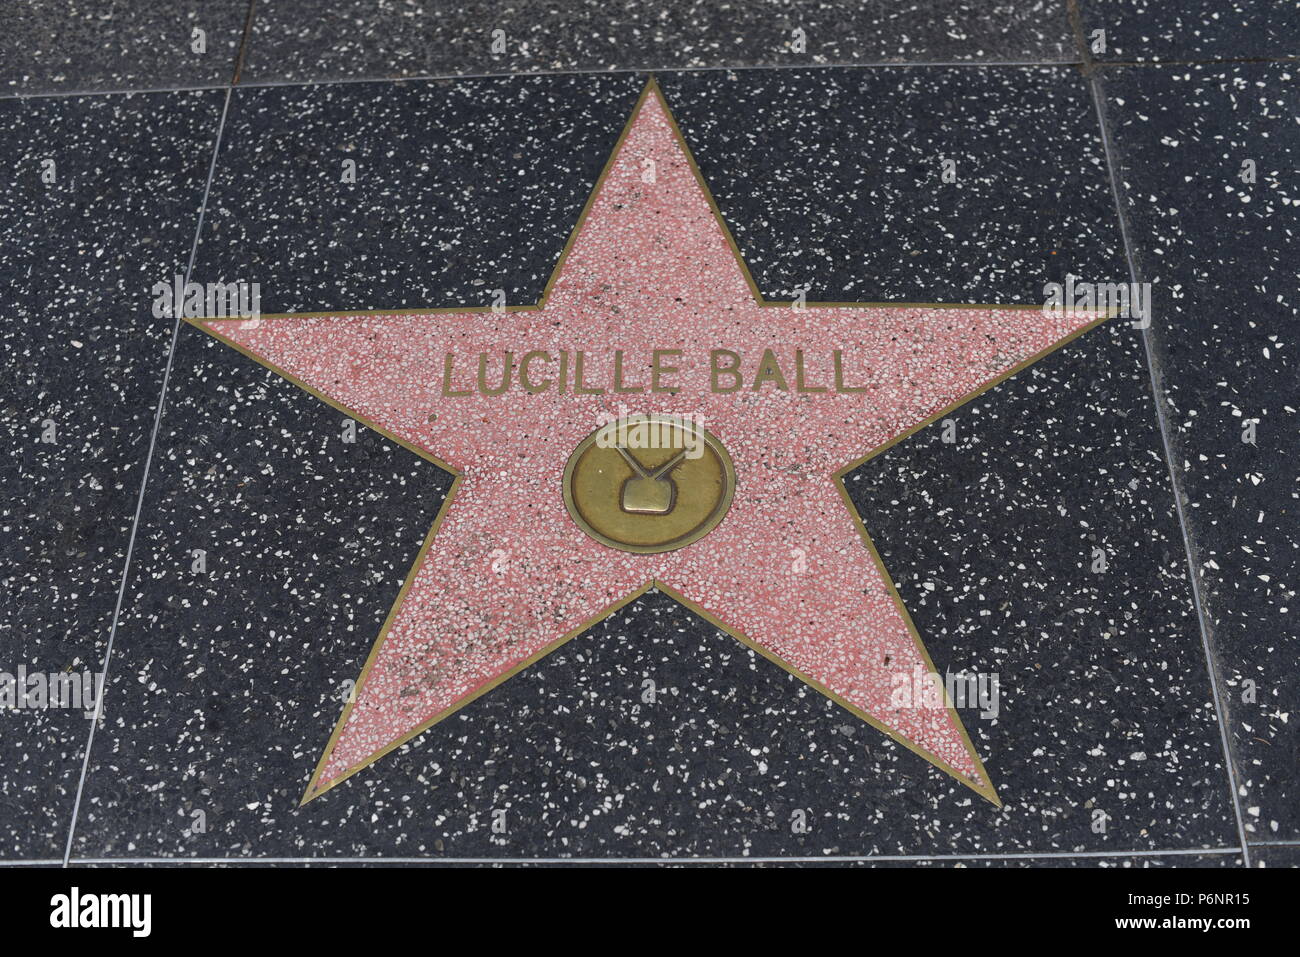 HOLLYWOOD, CA - 29 Giugno: Lucille Ball stella sulla Hollywood Walk of Fame in Hollywood, la California il 29 giugno 2018. Foto Stock